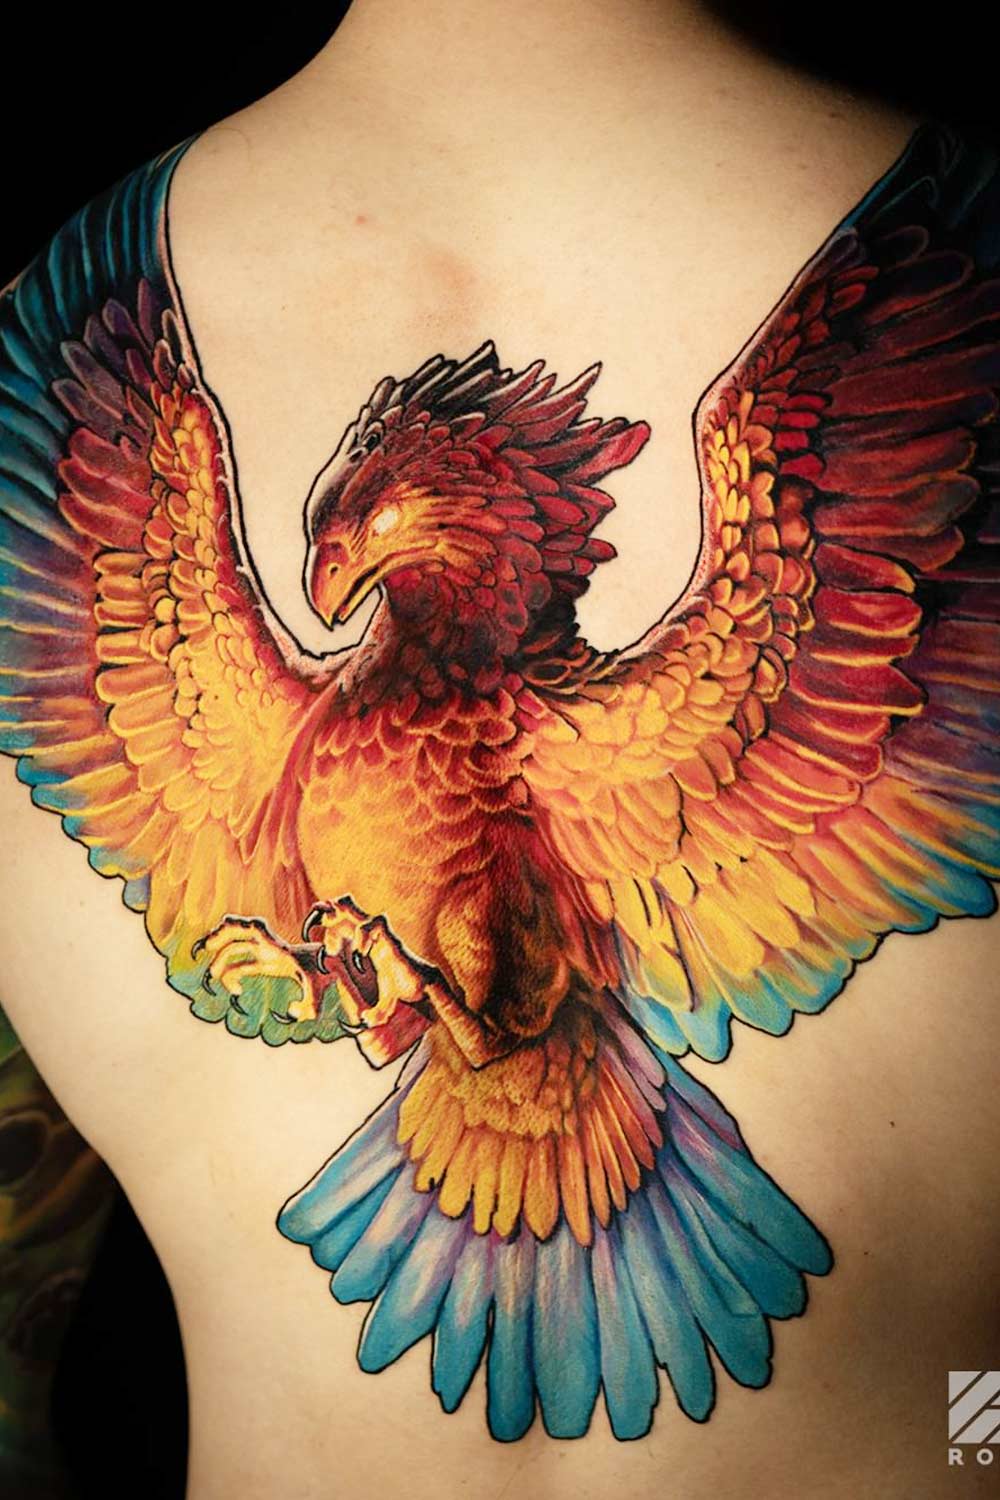 Koi fish and phoenix chest tattoo | www.annahangtattoovn.com… | Flickr